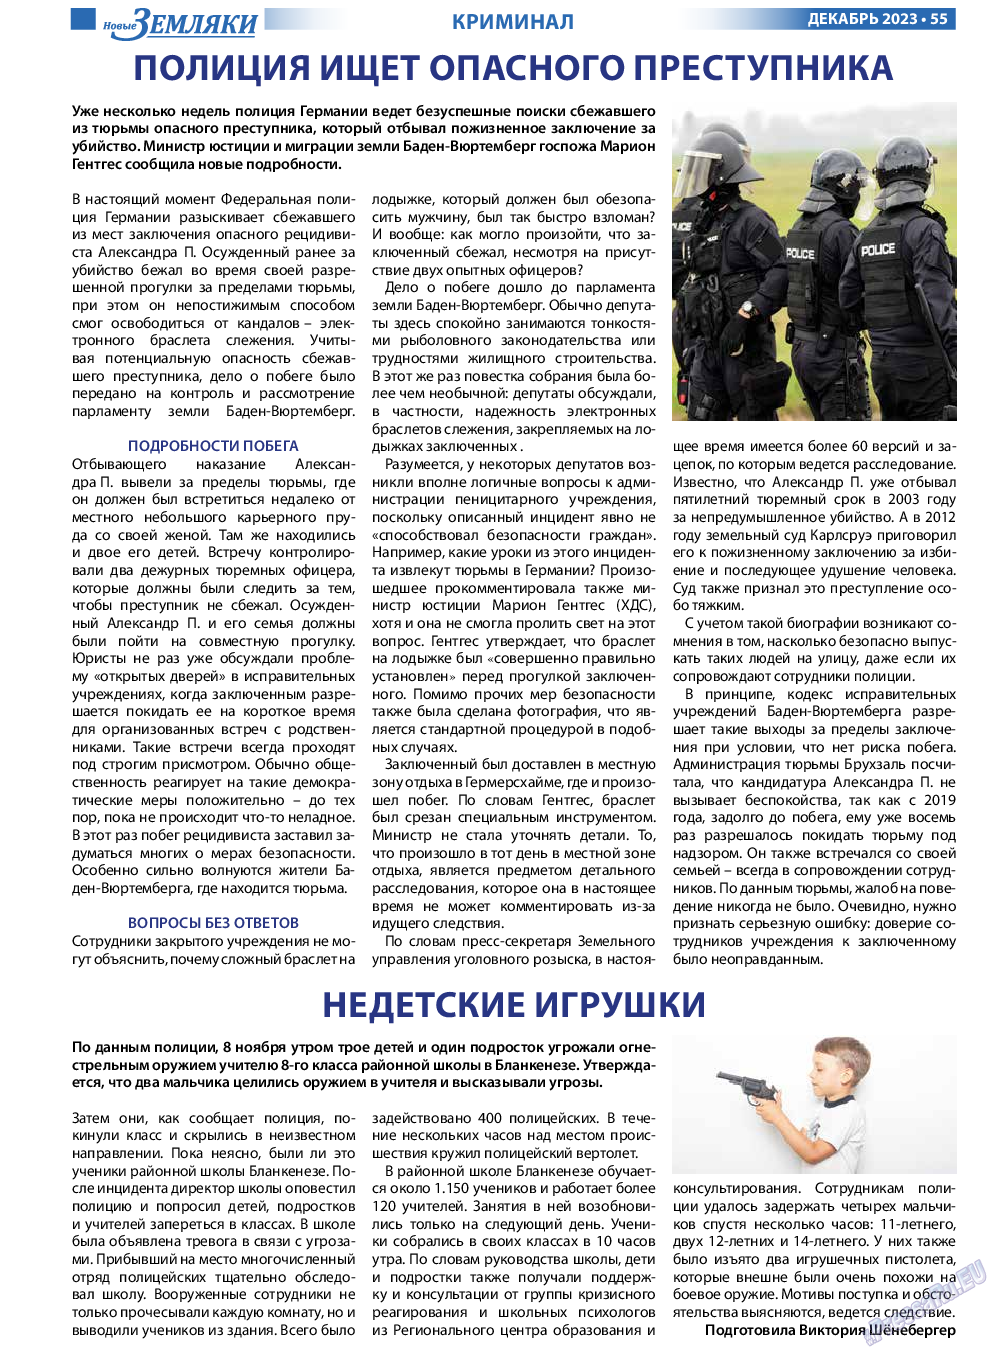 Новые Земляки, газета. 2023 №12 стр.55